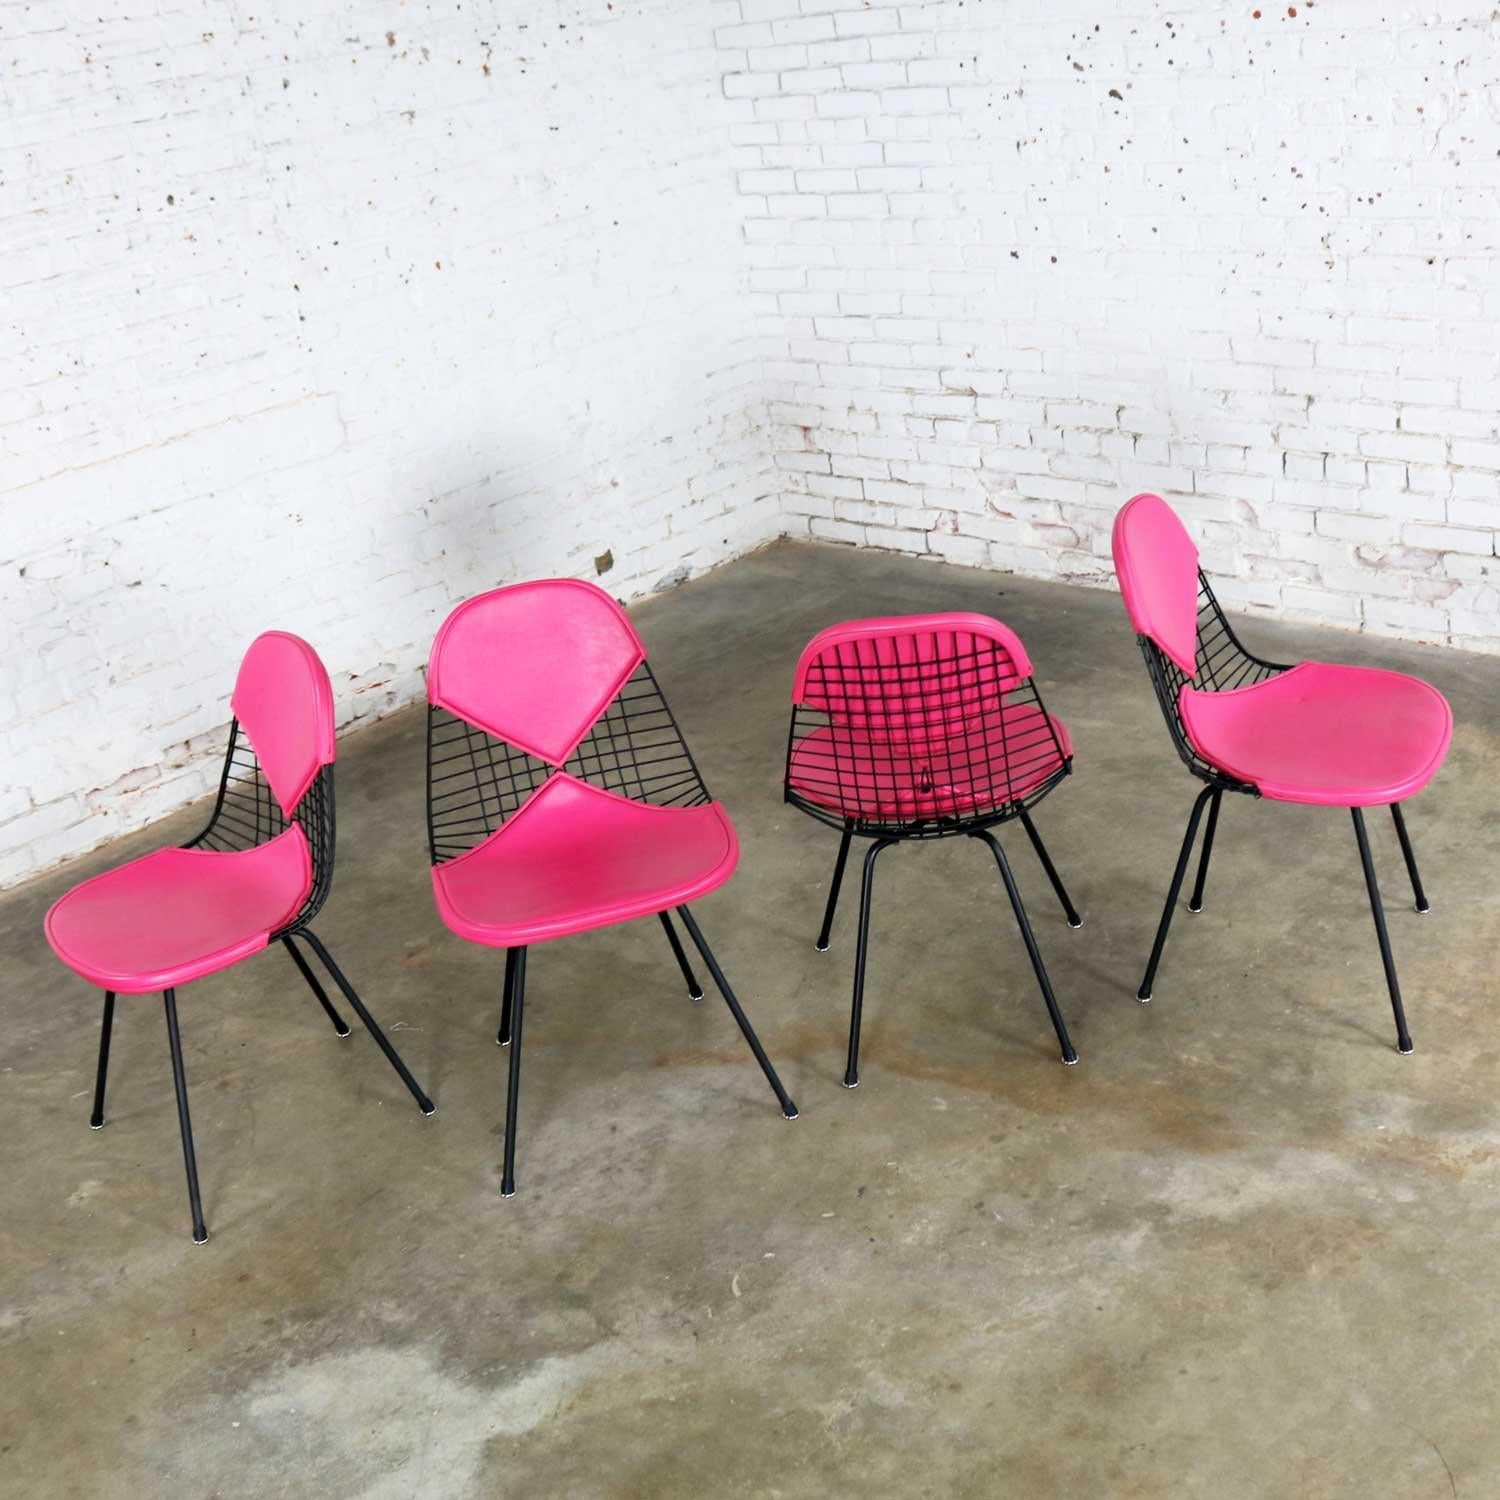 Fabuleux ensemble de quatre chaises DKX-2 à coque en fil de fer sur des bases en X avec des housses de bikini en Naugahyde rose vif conçues par Charles et Ray Eames pour Herman Miller. Ils sont dans un merveilleux état général de restauration